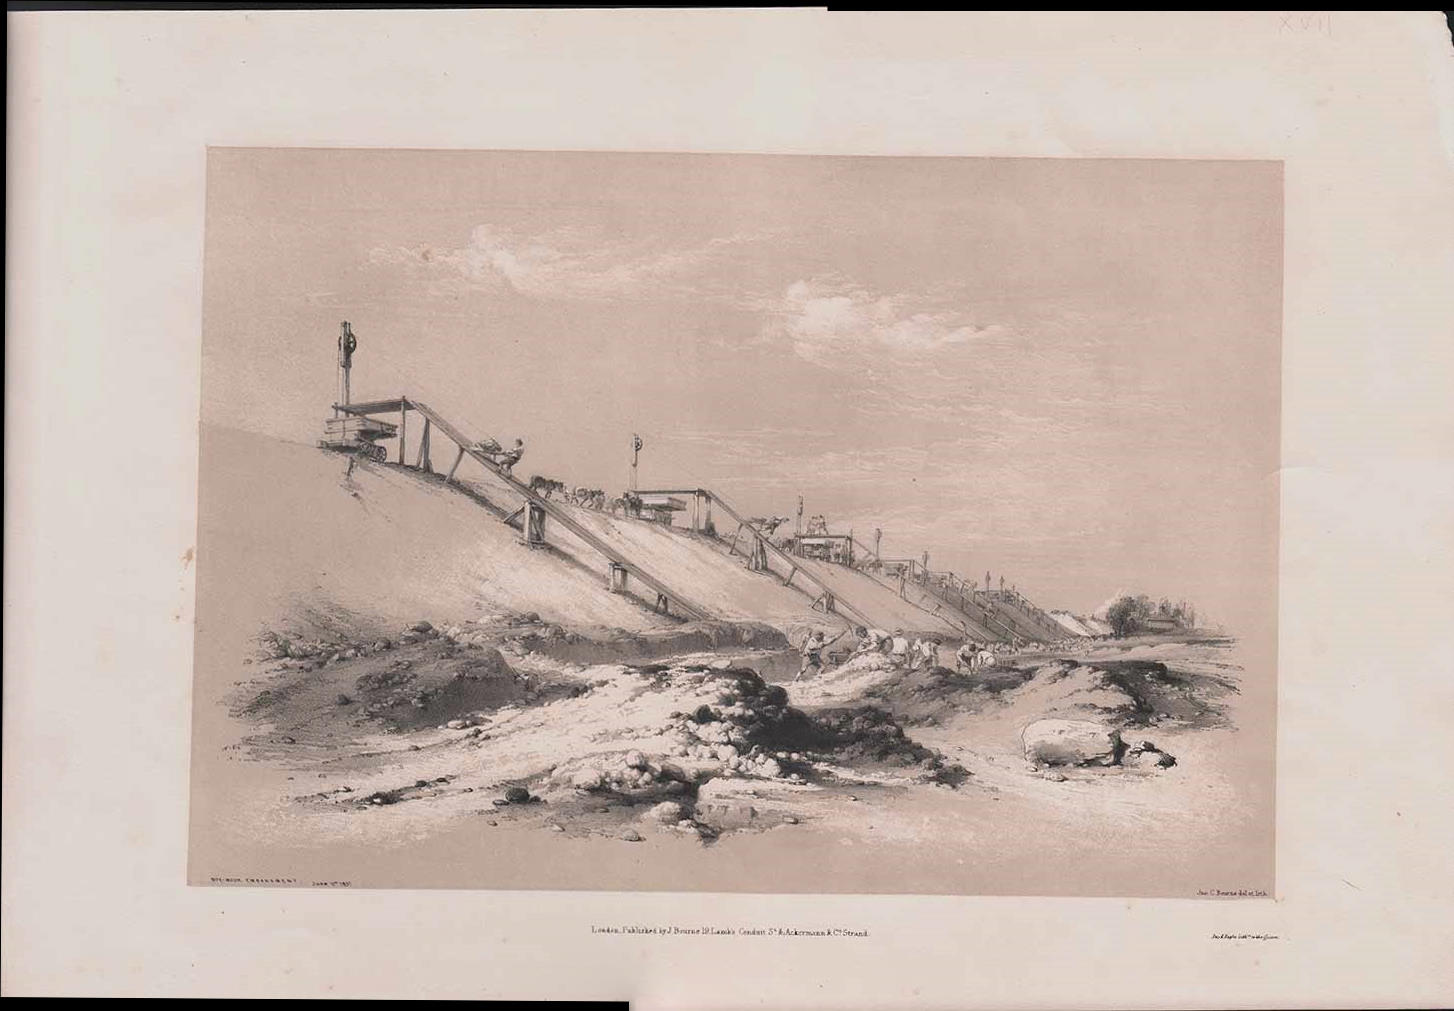 Box-Moor Embankment June 11th 1837